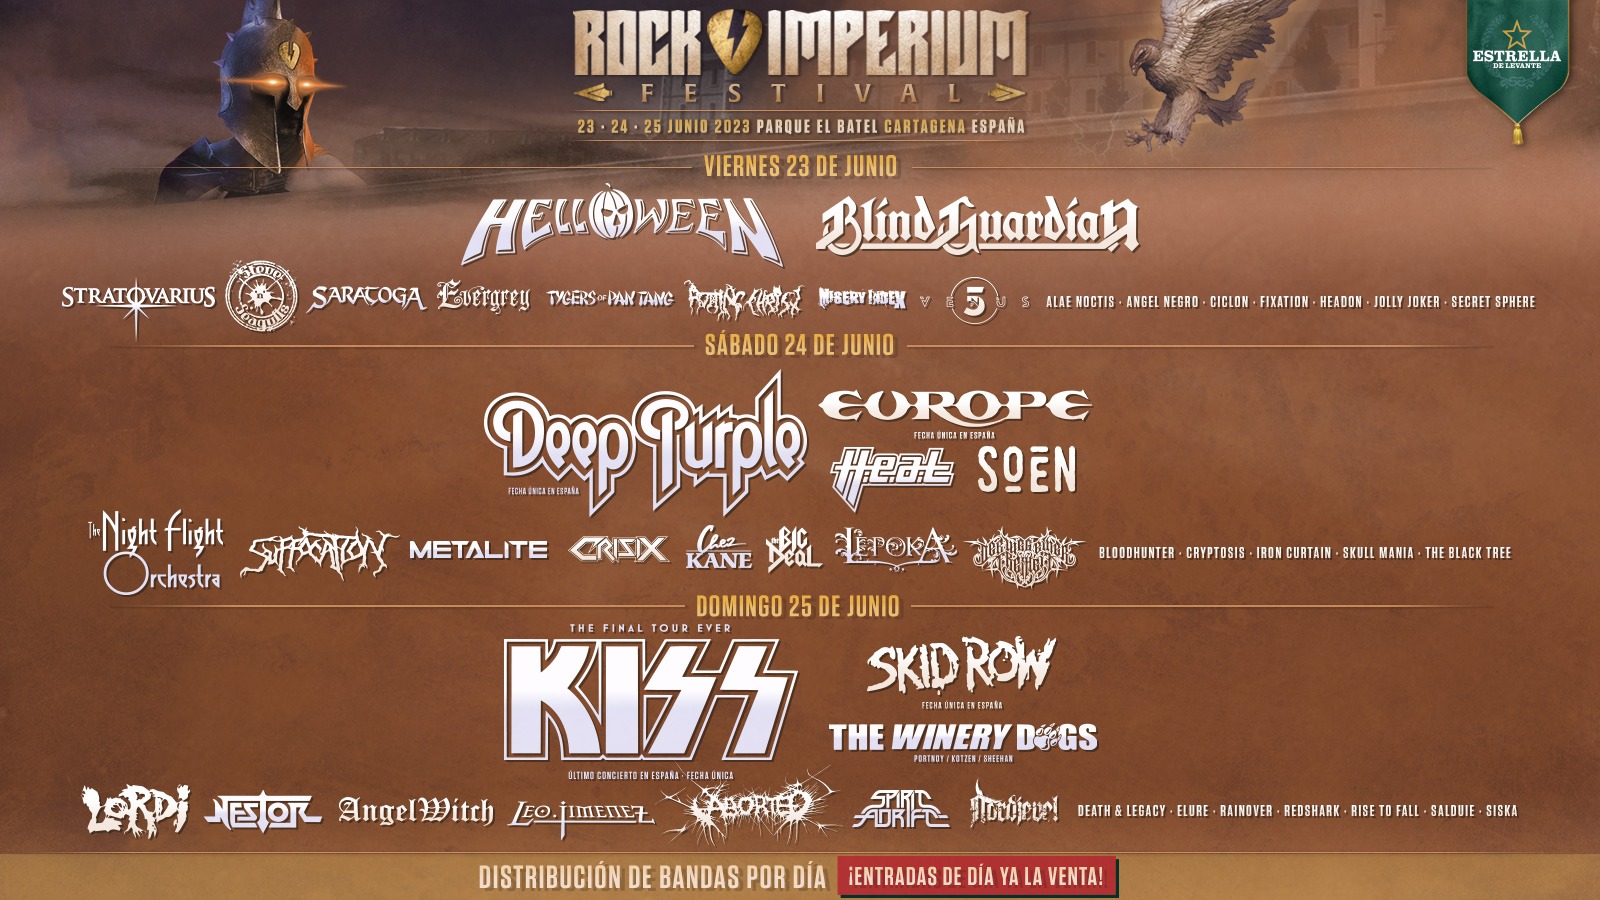 CARTAGENA | Helloween para el viernes, Deep Purple el sábado y Kiss el domingo, en el Rock Imperium Fest